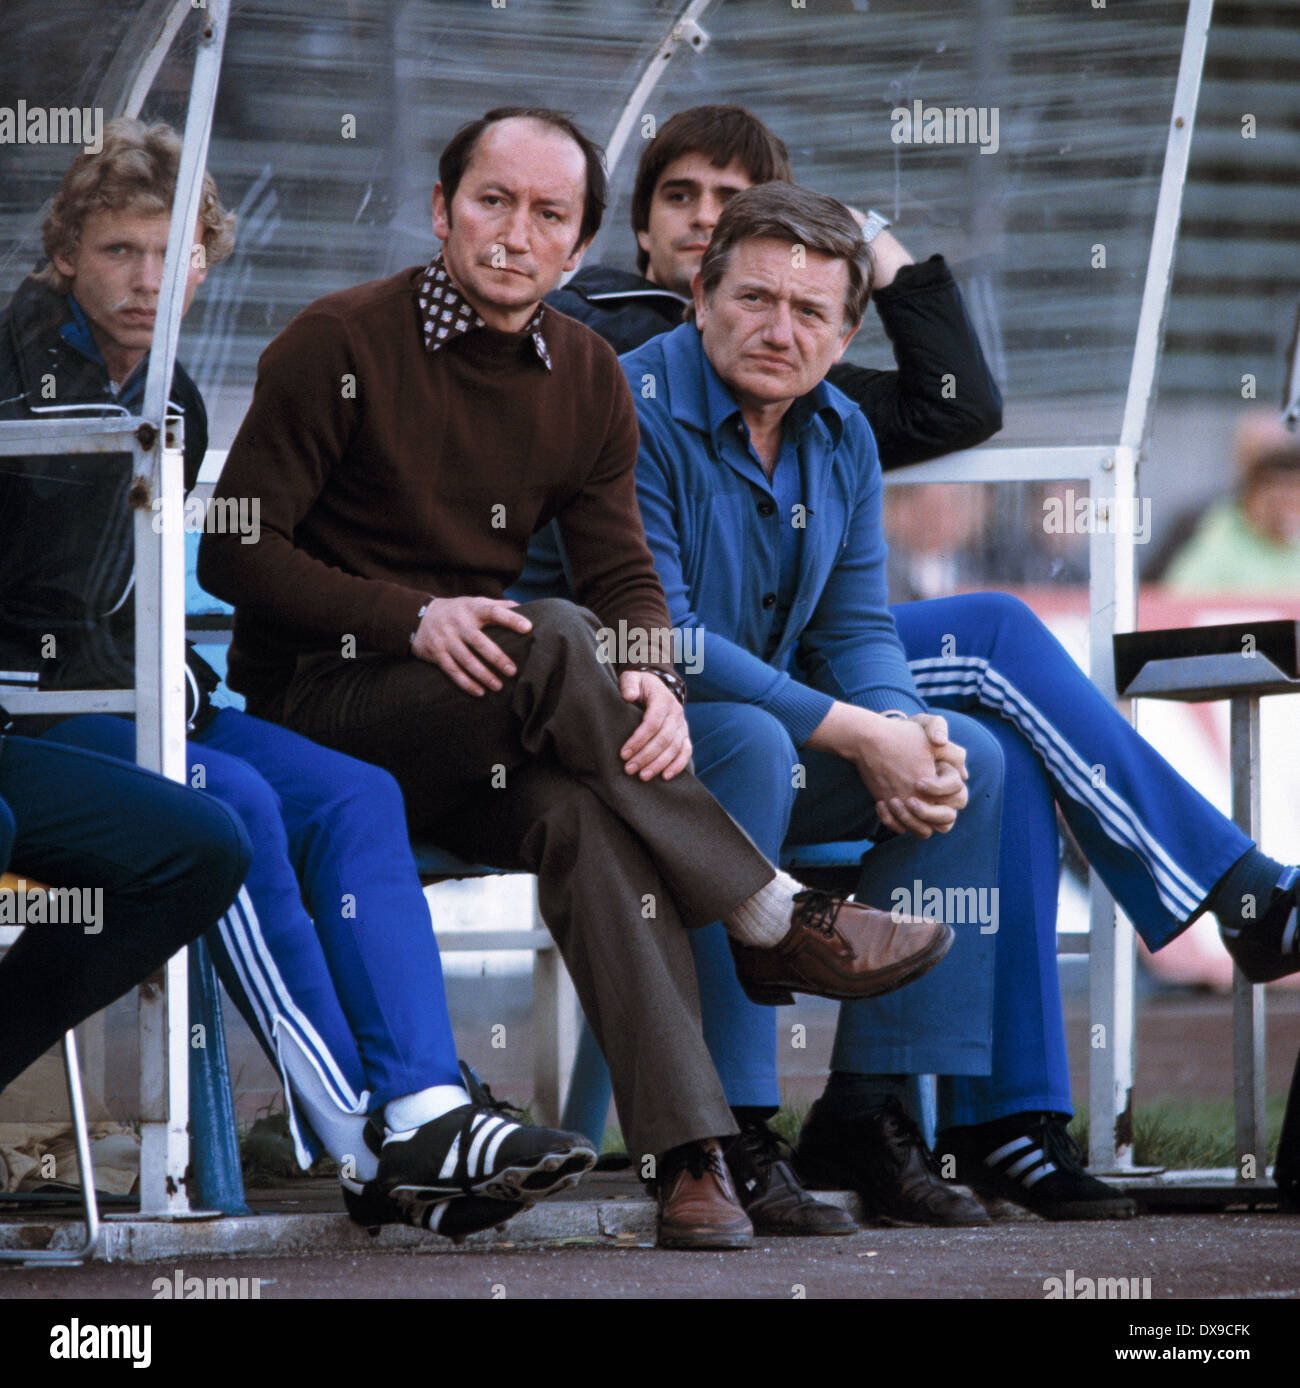 Football, DFB, 1979-1980, demi-finale, Parkstadion, FC Schalke 04 contre 1. FC Cologne 0:2, banc d'entraîneur Schalke, f.l.t.r. Thomas Kruse, entraîneur Fahrudin Jusufi et gardien Charlie Karl-Heinz Neumann Banque D'Images